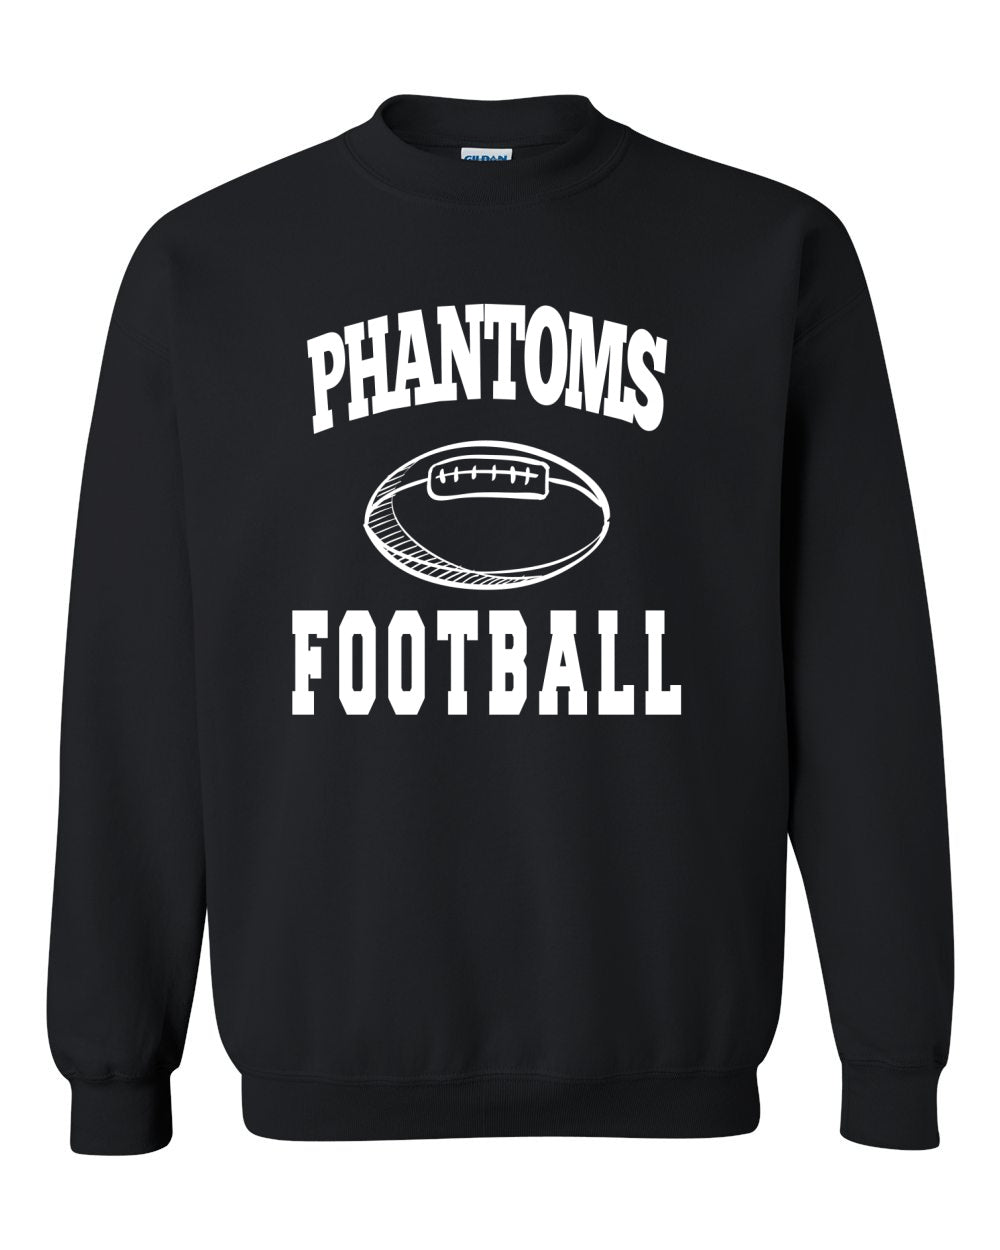 West De Pere Phantoms Merch - Tees, Long Sleeve Tee, Crewneck or Hoodie - Block Phantoms Football